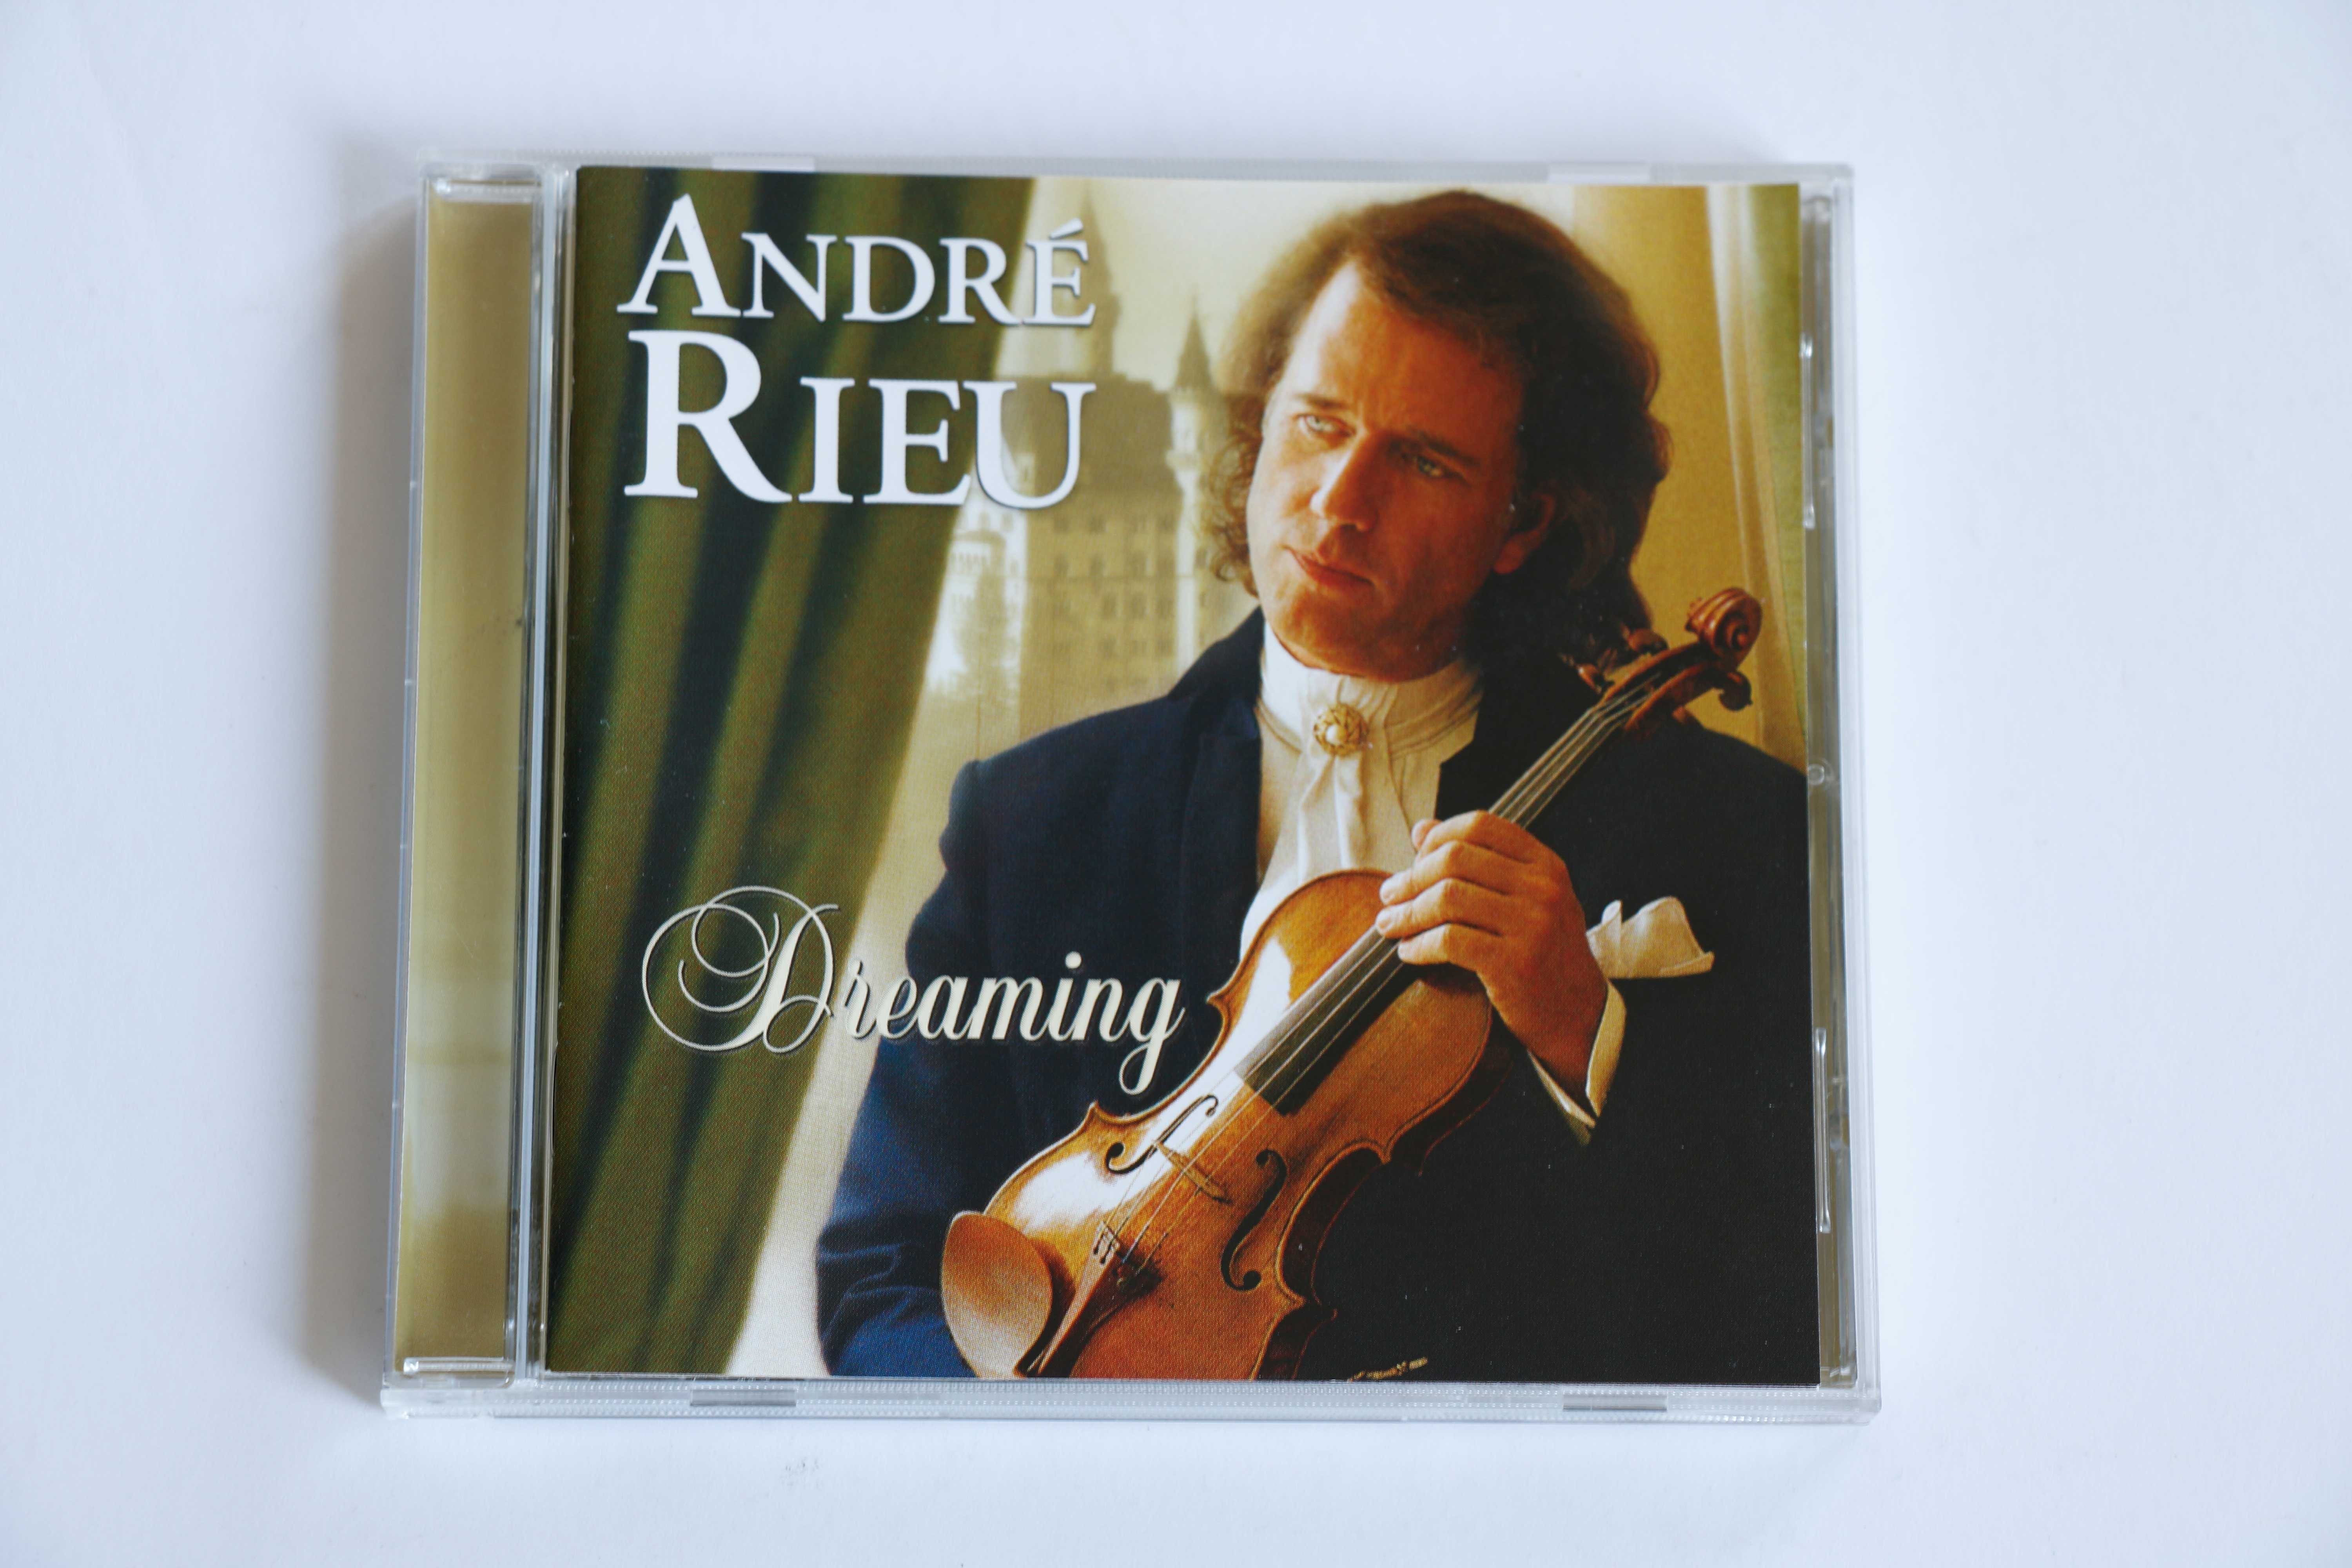 Andre Rieu - Draming - CD